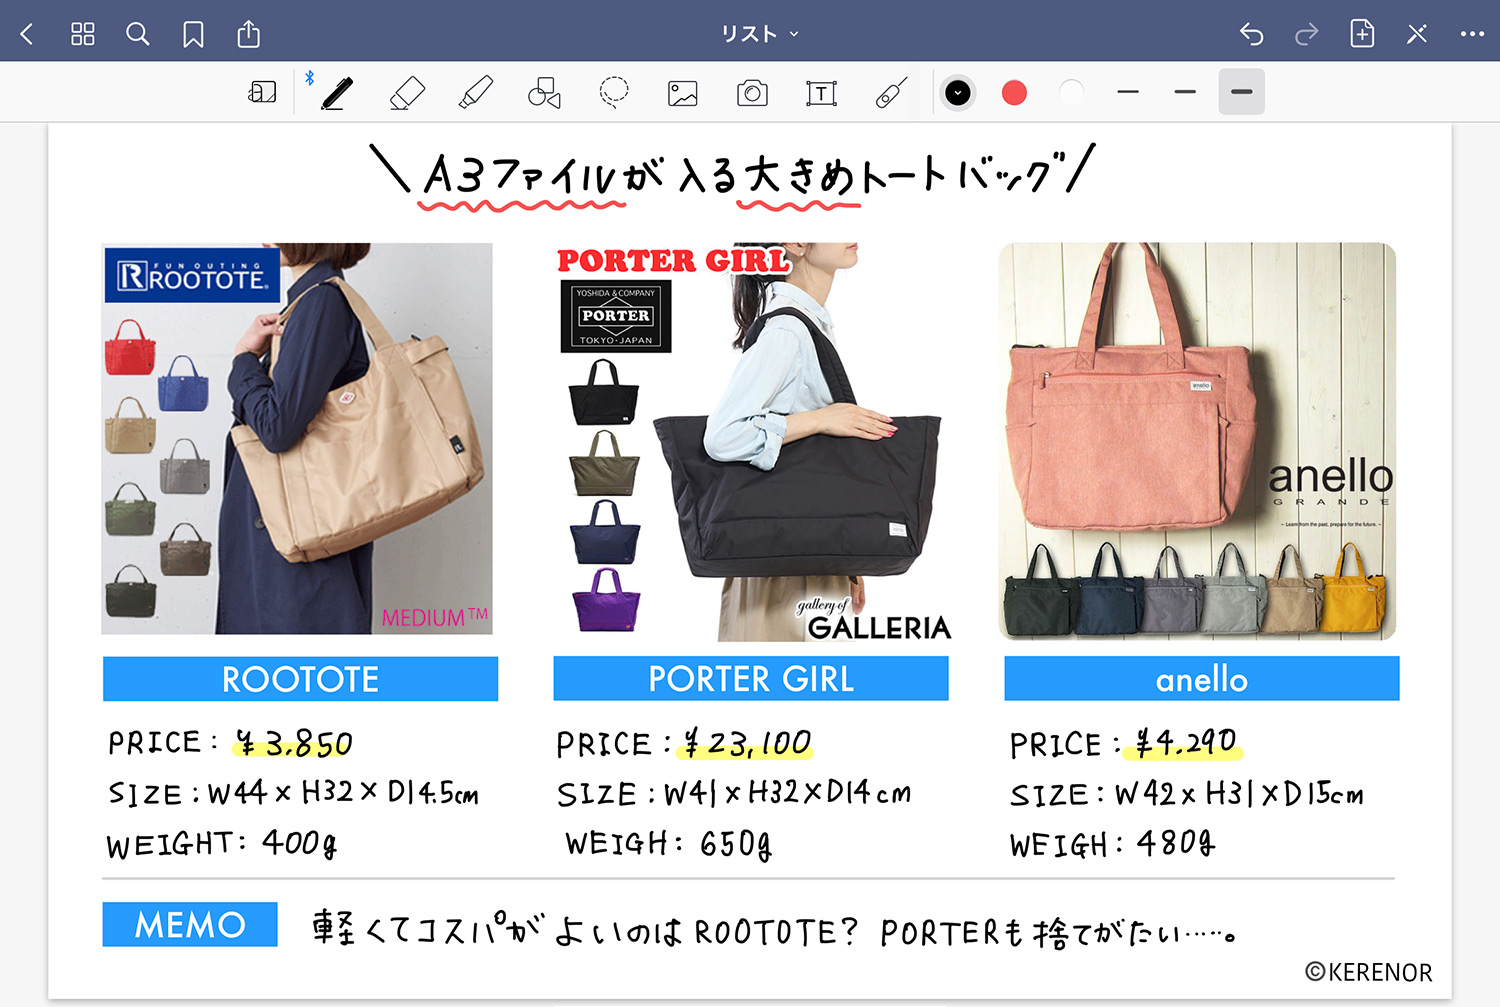 ノートアプリ 「GoodNotes 5」で視覚的に商品を比較する -  バッグ